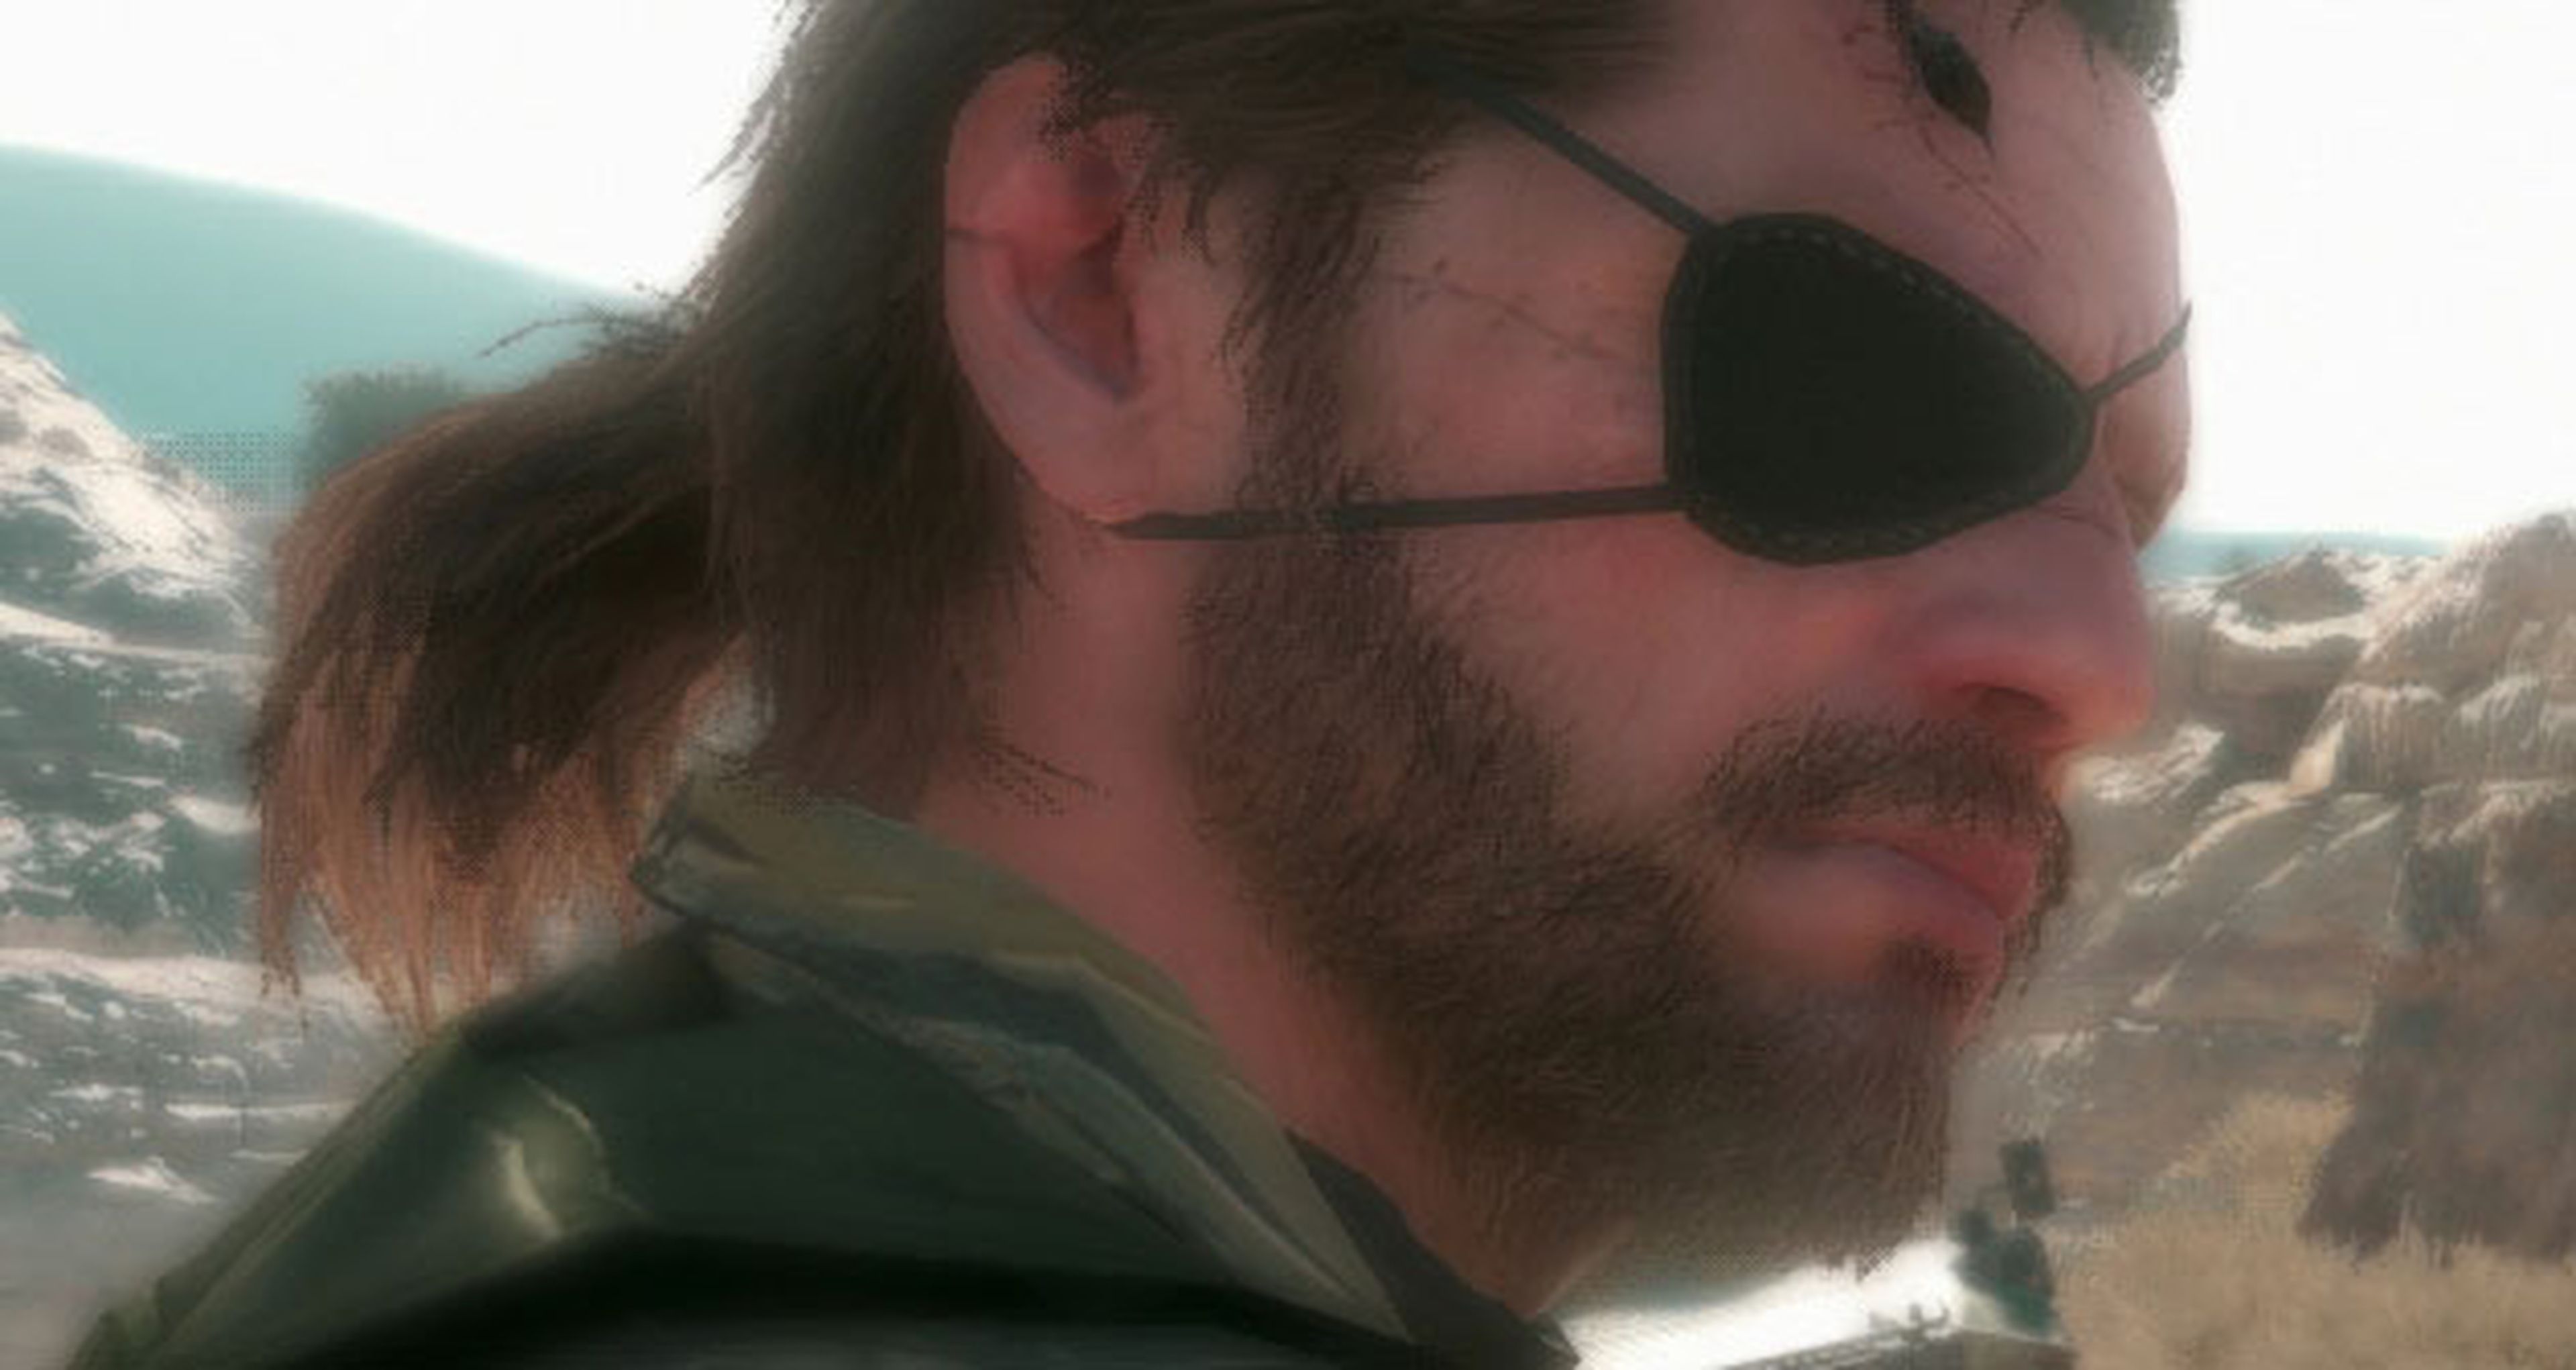 Metal Gear Solid V tendría que vender 6 millones de copias para ser rentable